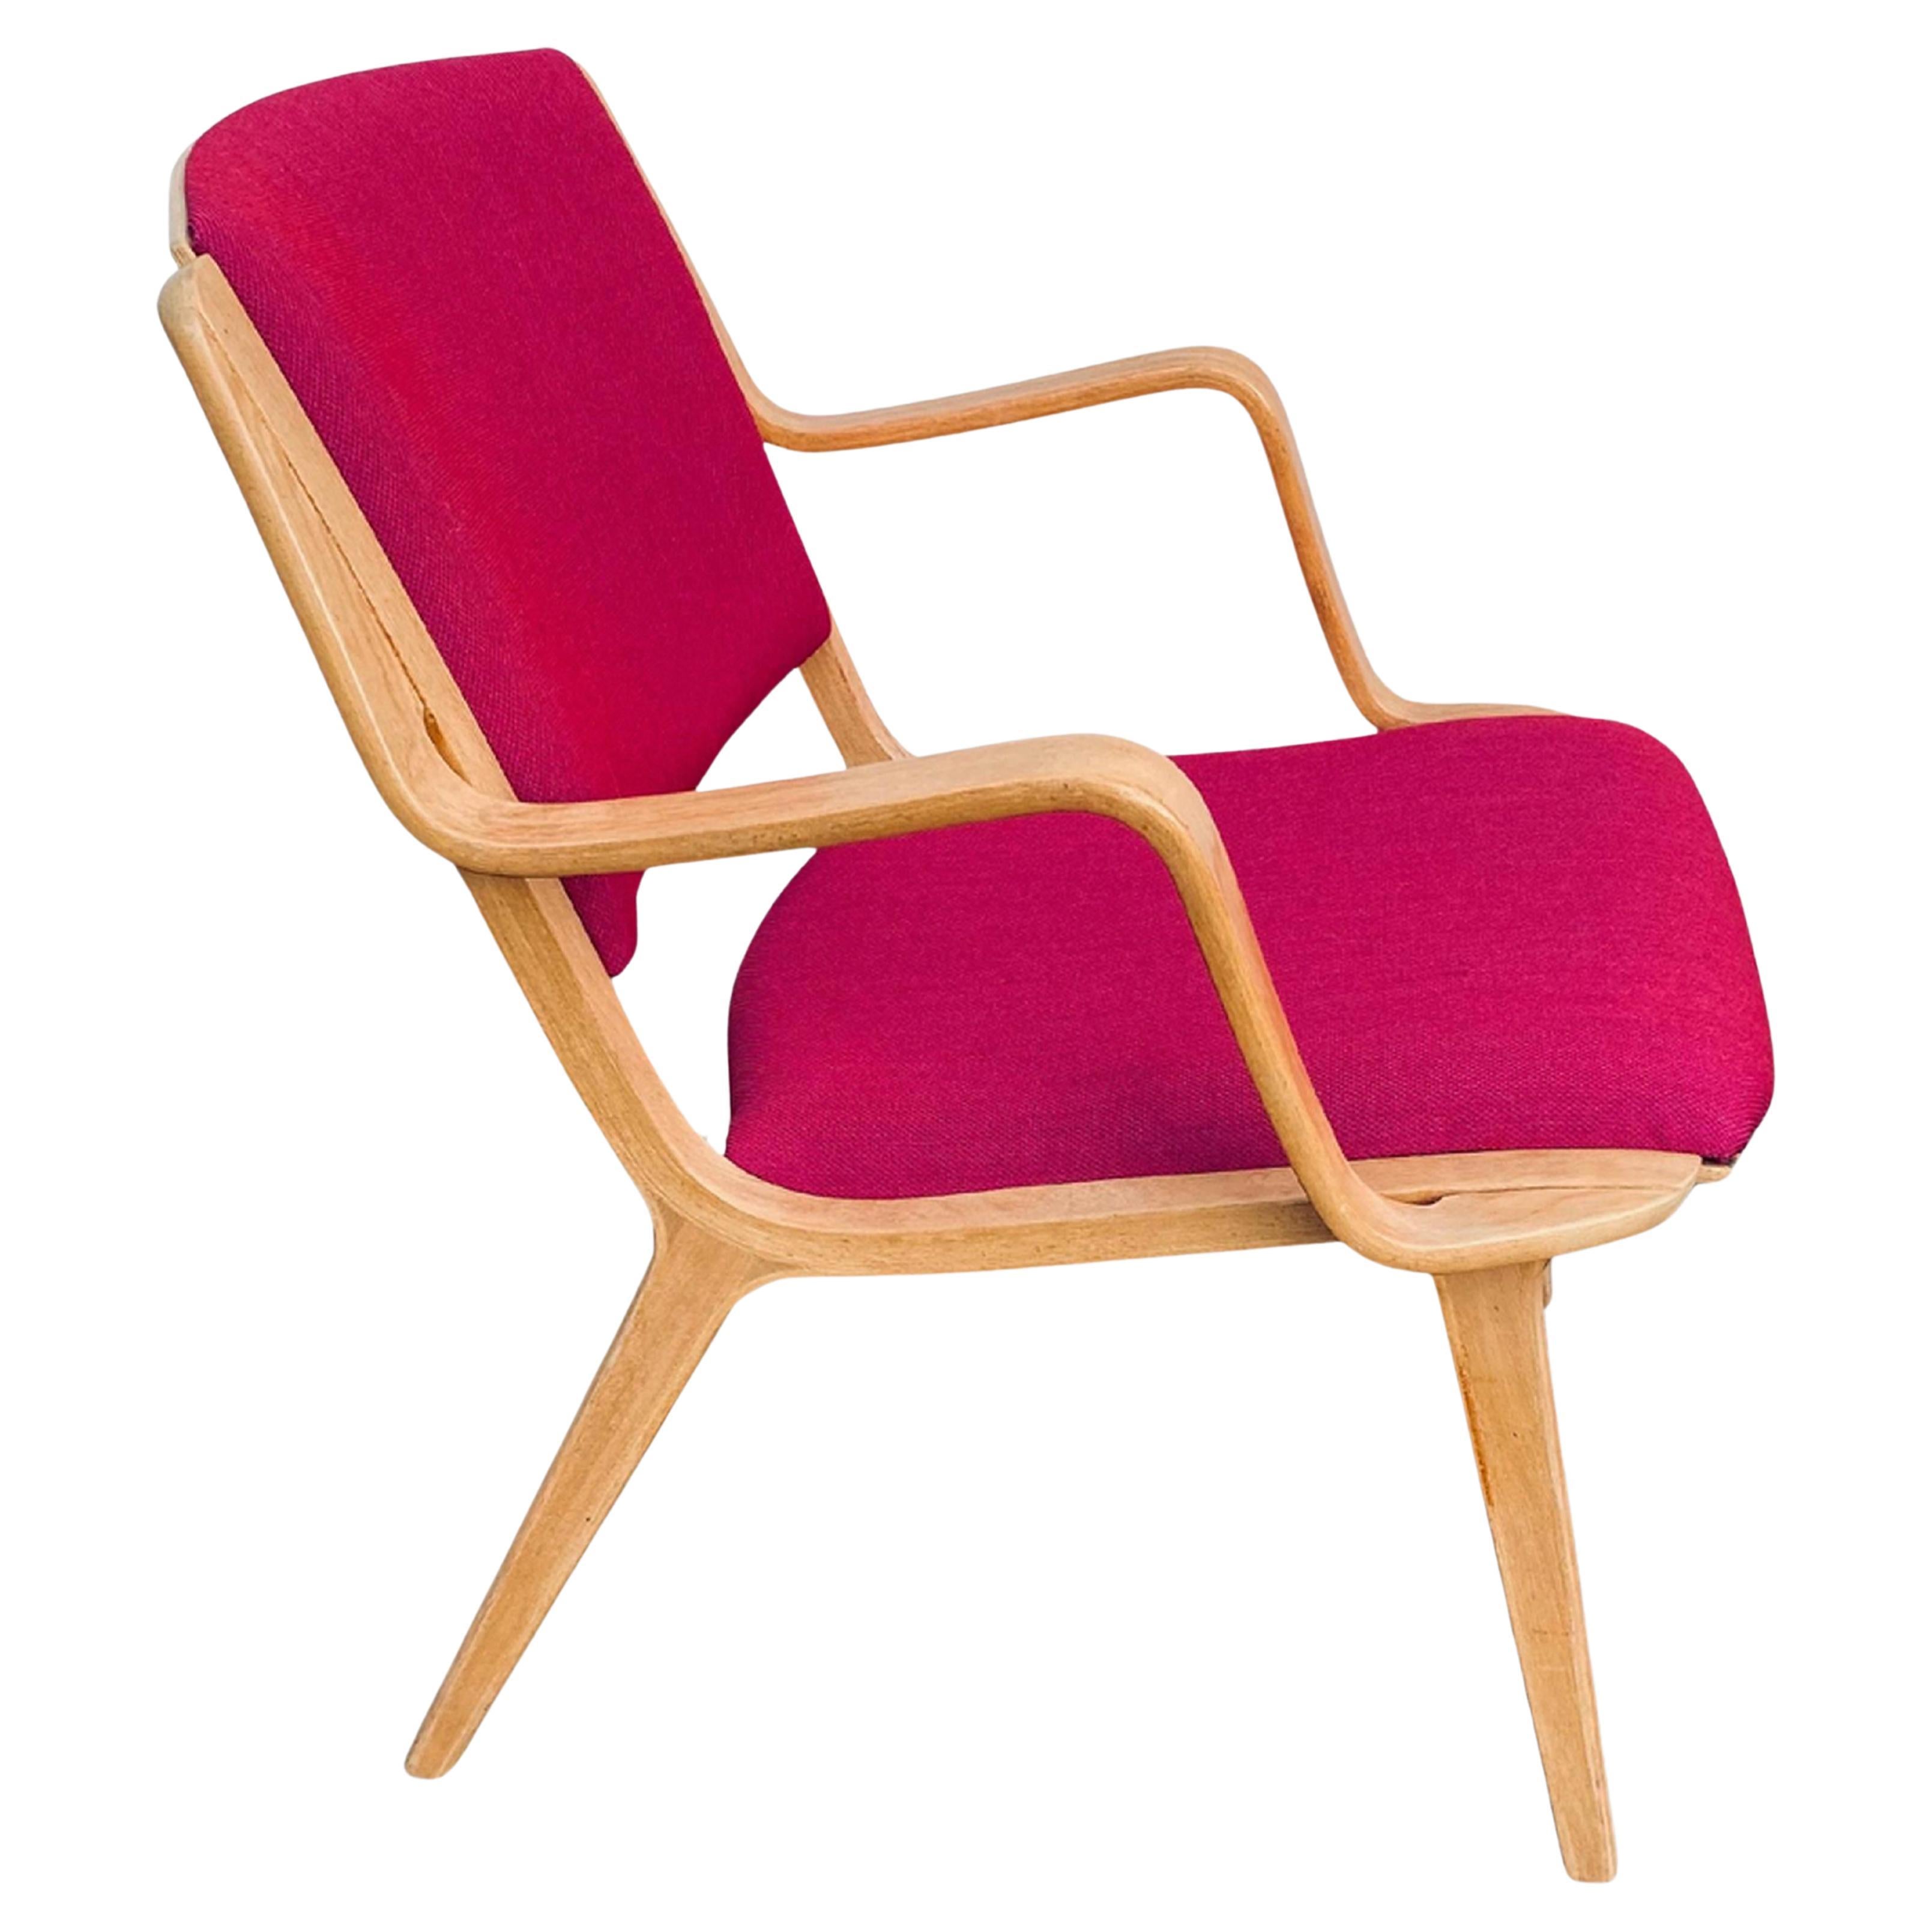 Chaise longue "AX" des designers danois Peter Hvidt et Orla Mølgaard  en vente